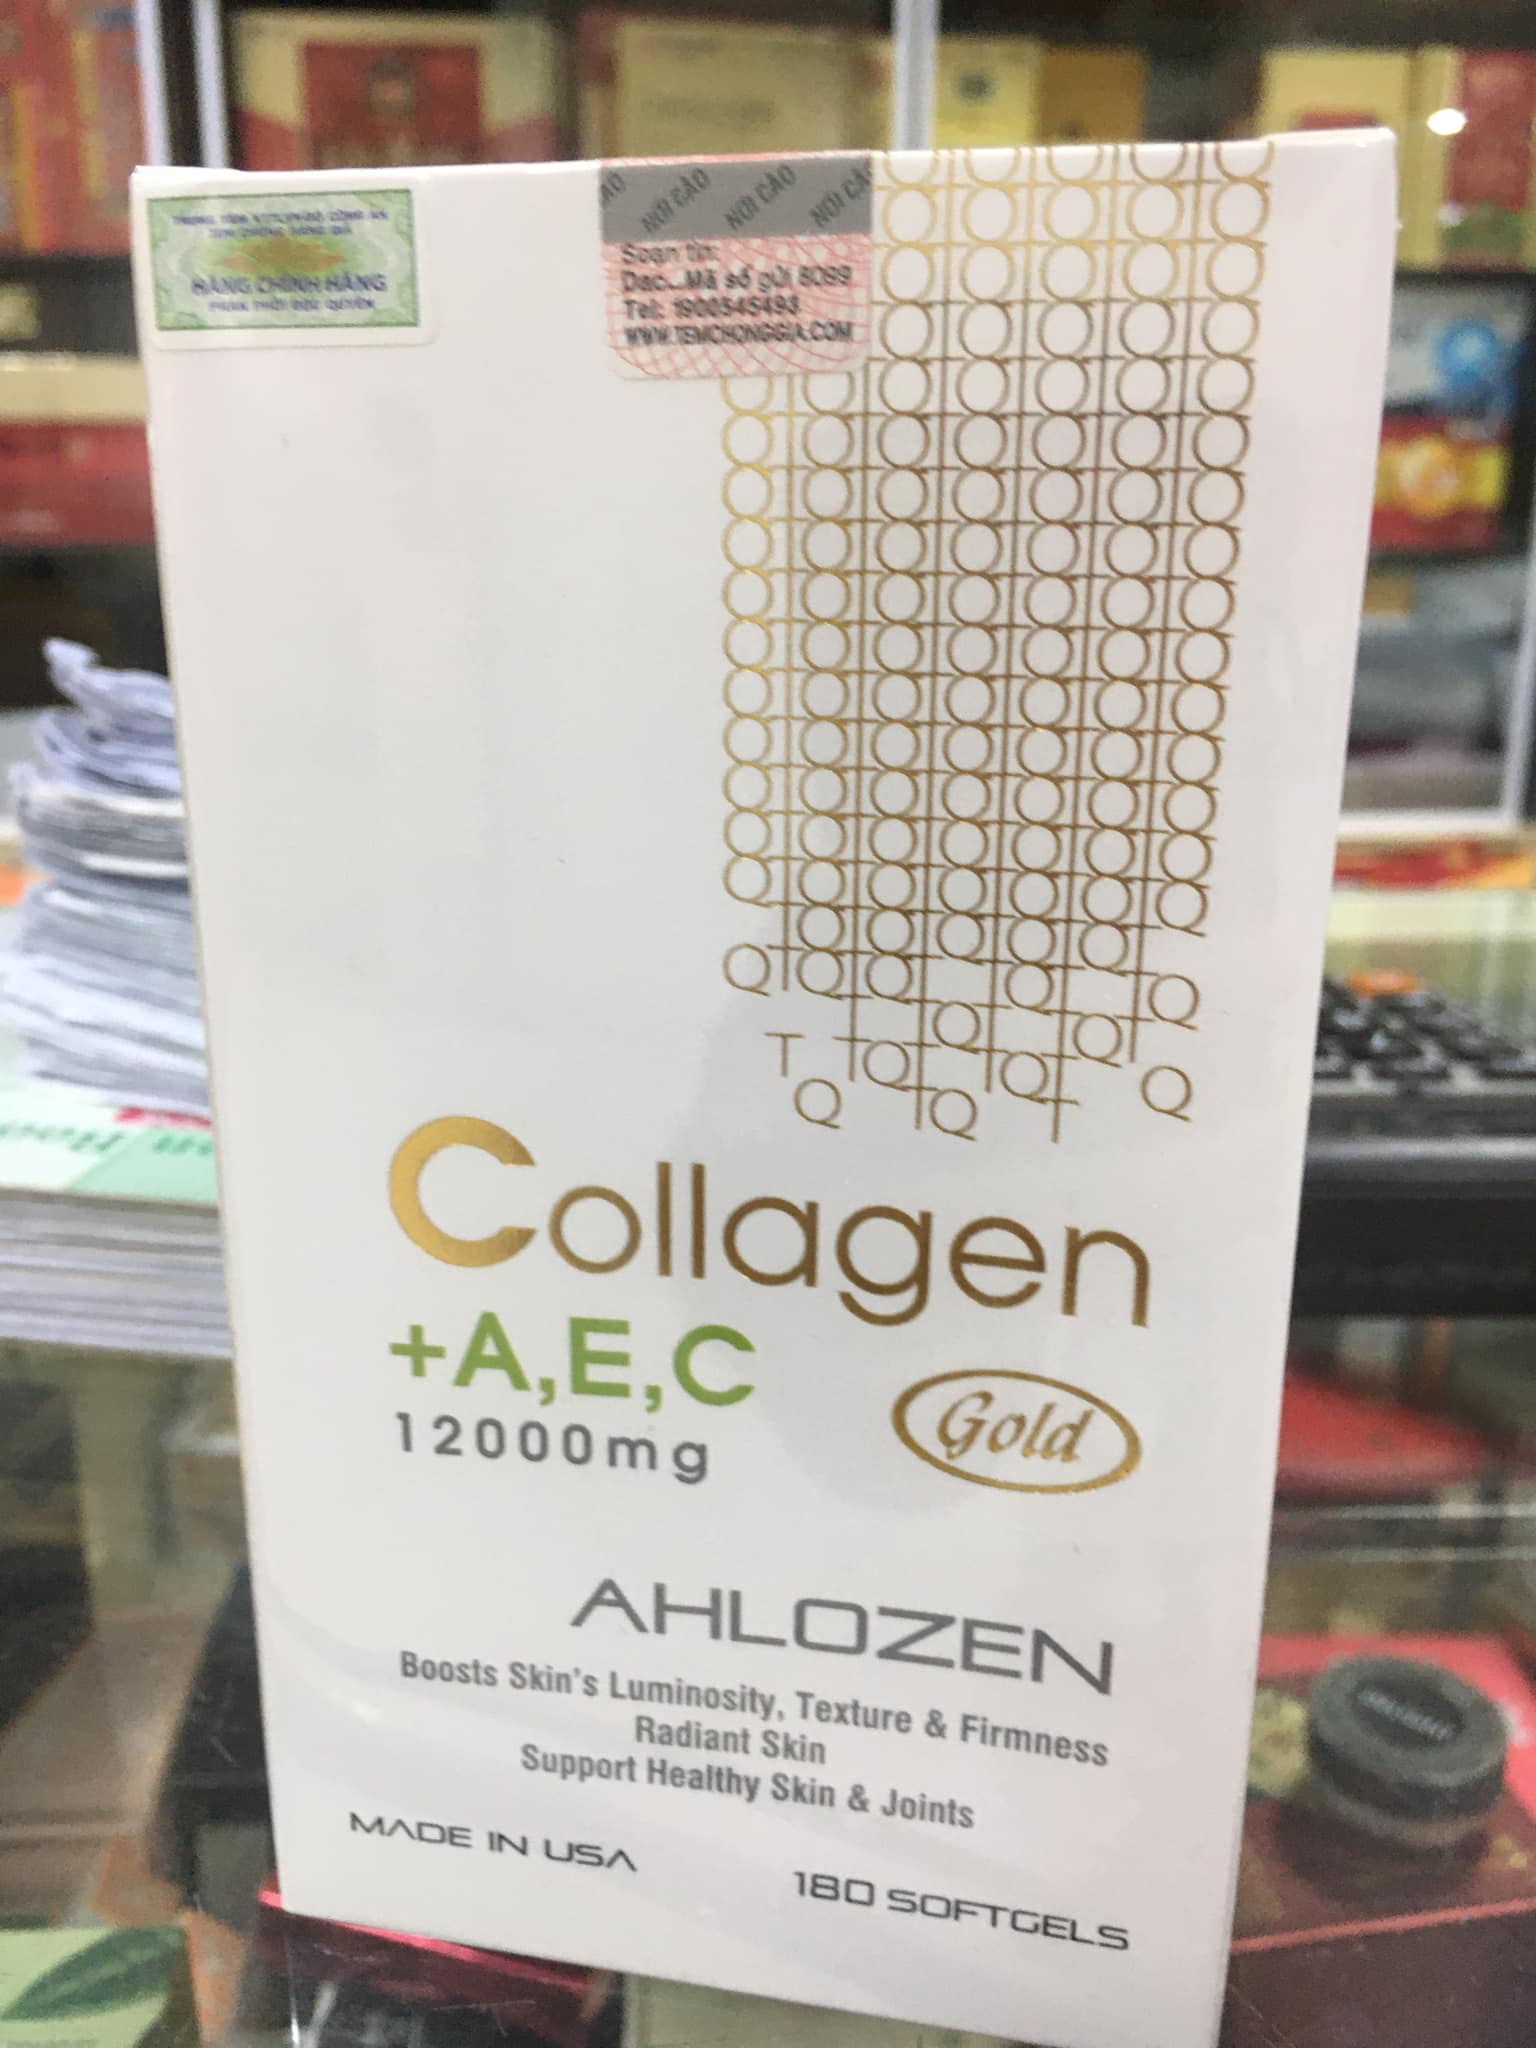 Collagen AEC Gold 12000mg Ahlozen